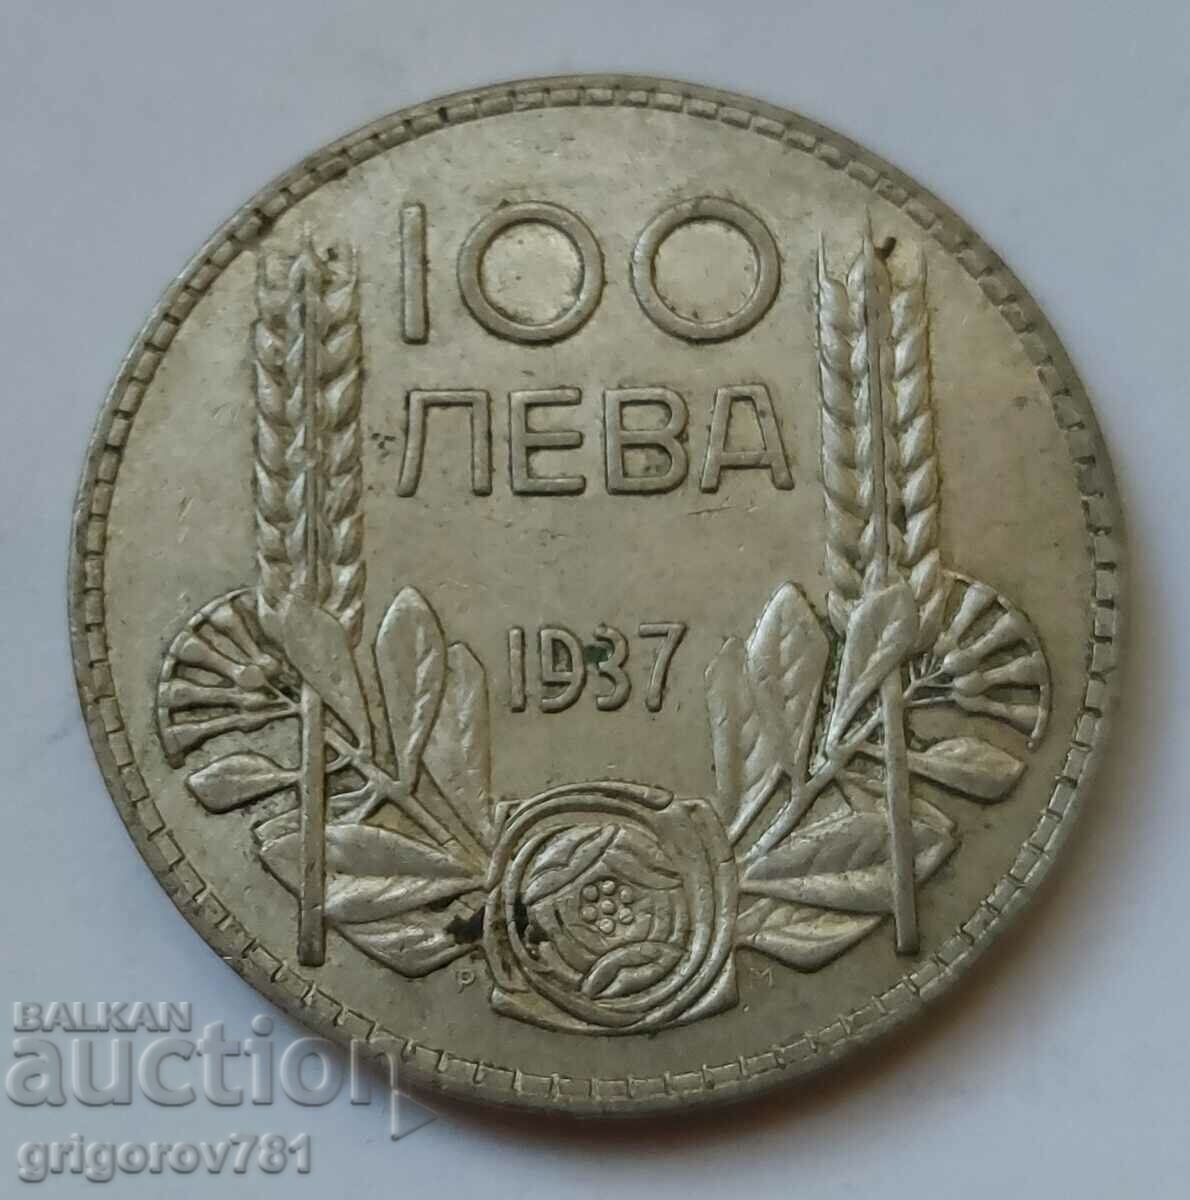 100 leva argint Bulgaria 1937 - monedă de argint #94